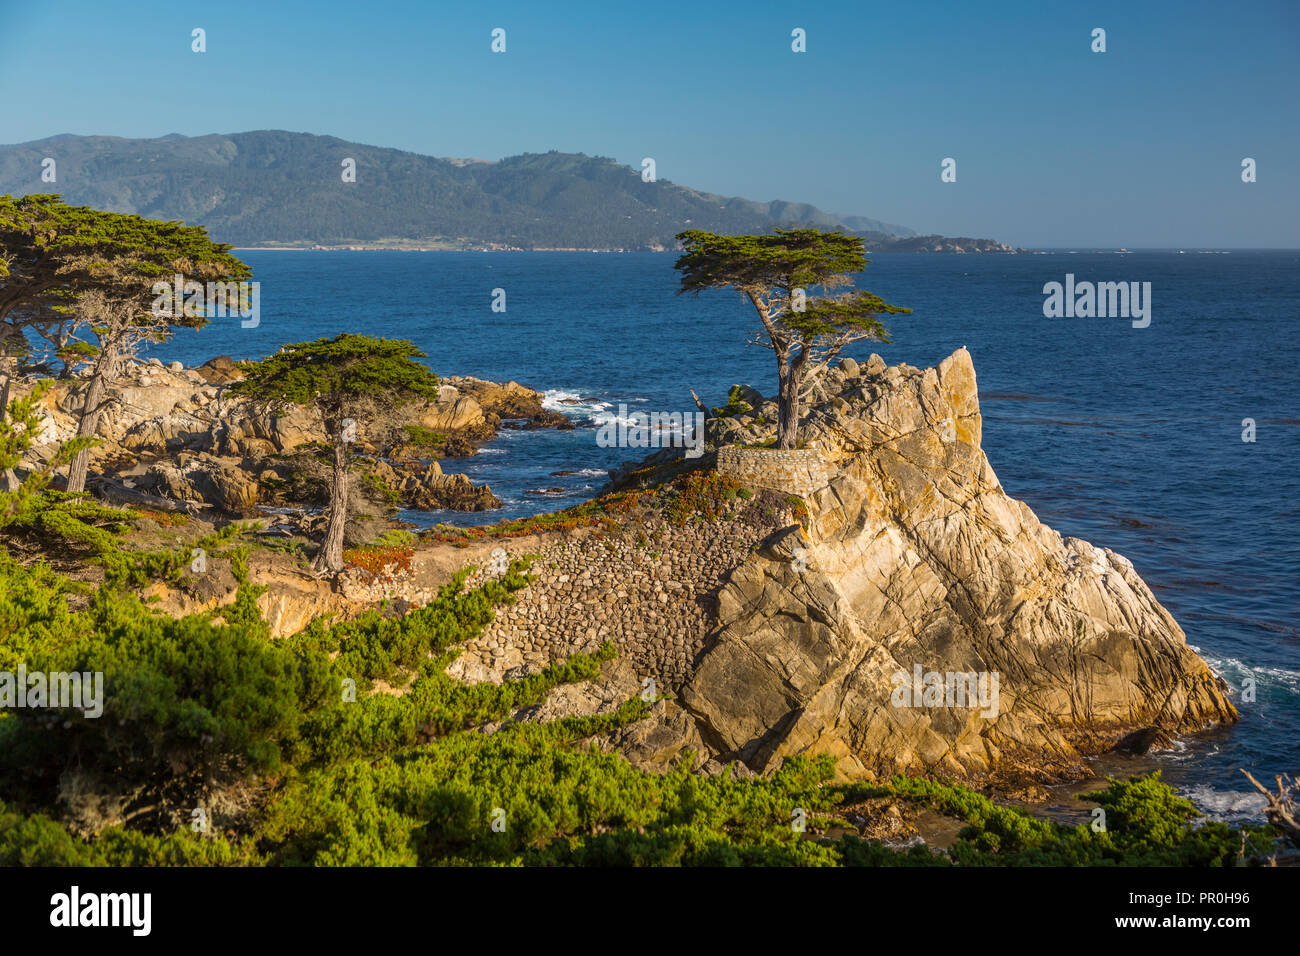 Blick auf die Bay und Lone Cypress am Kiesel Strand, 17 Kilometer Fahrt, Halbinsel, Monterey, Kalifornien, Vereinigte Staaten von Amerika, Nordamerika Stockfoto